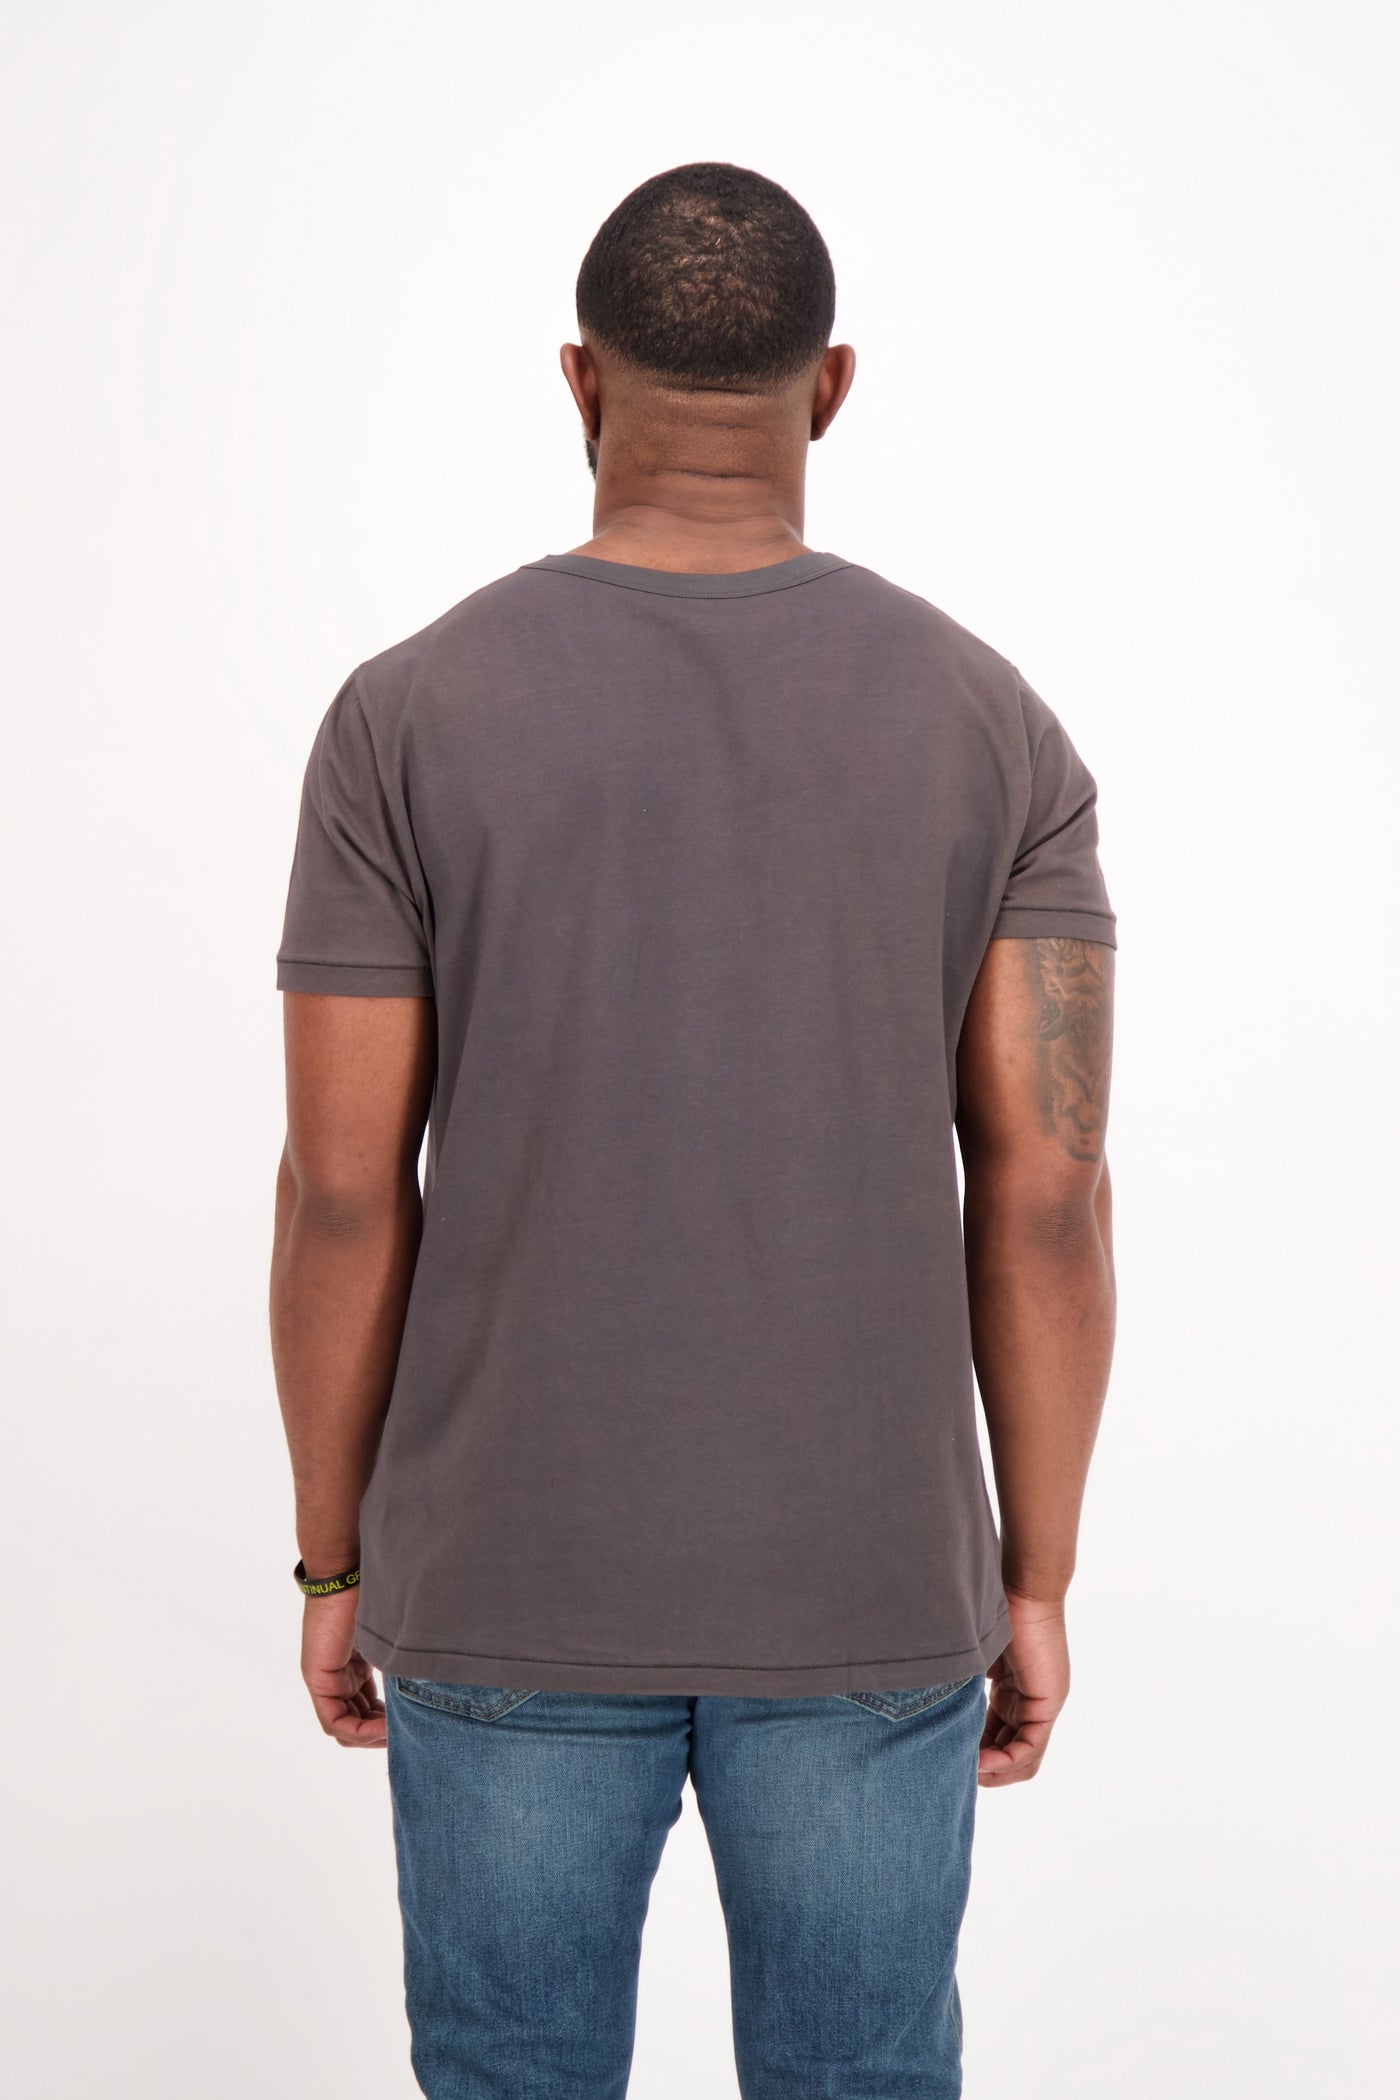 grey unisex sustainable tshirt